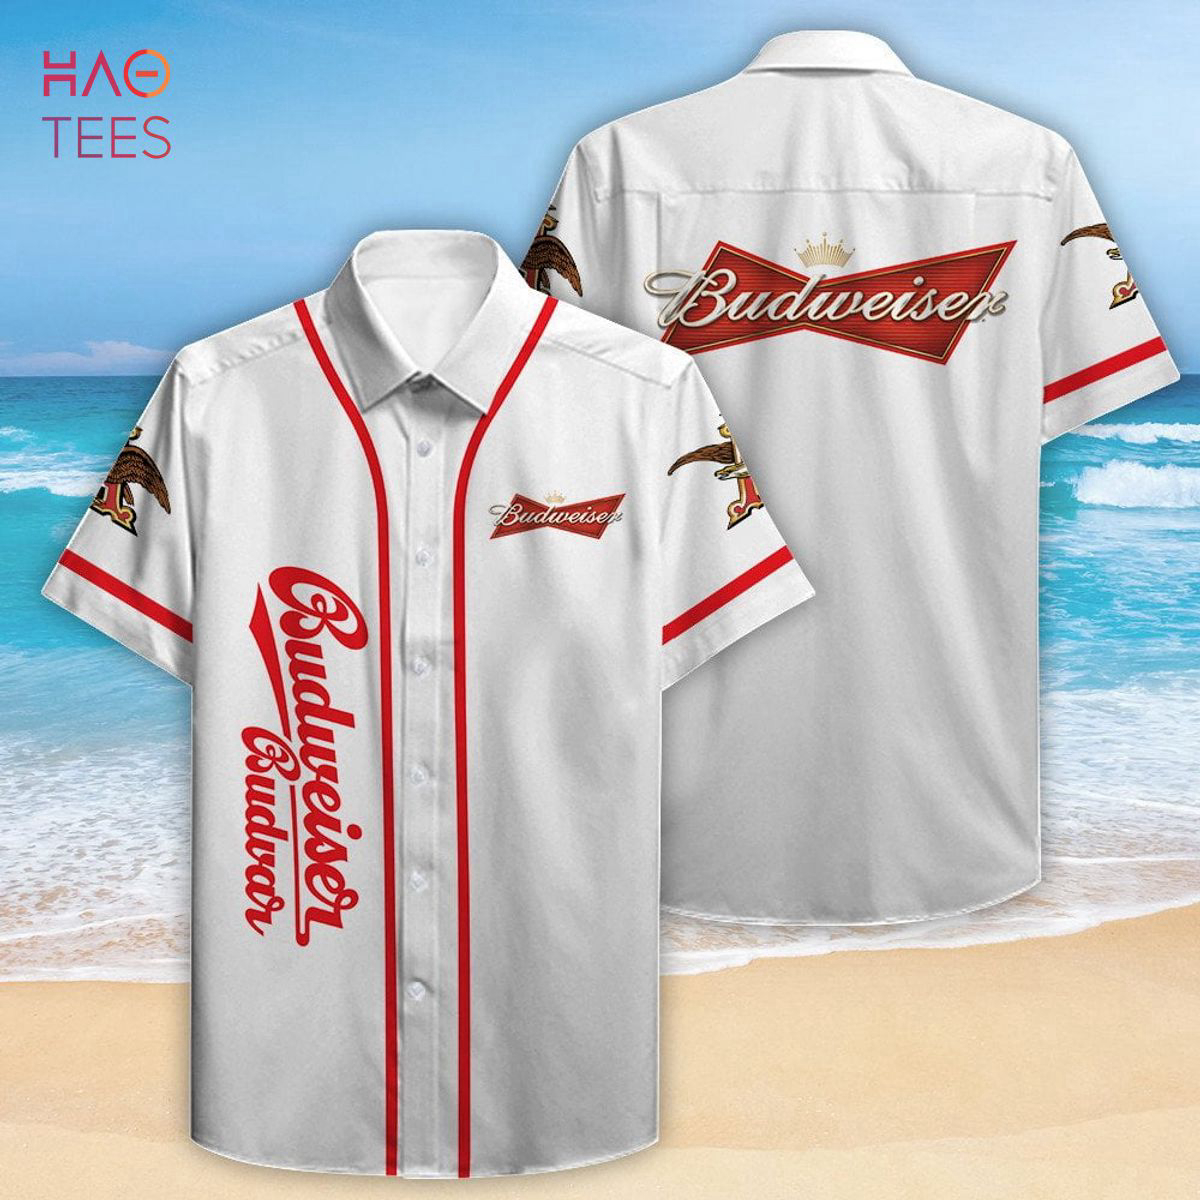 Budweiser Budvar All Over Print 3D Hawaiian Shirt: Summer Style with a Refreshing Twist!